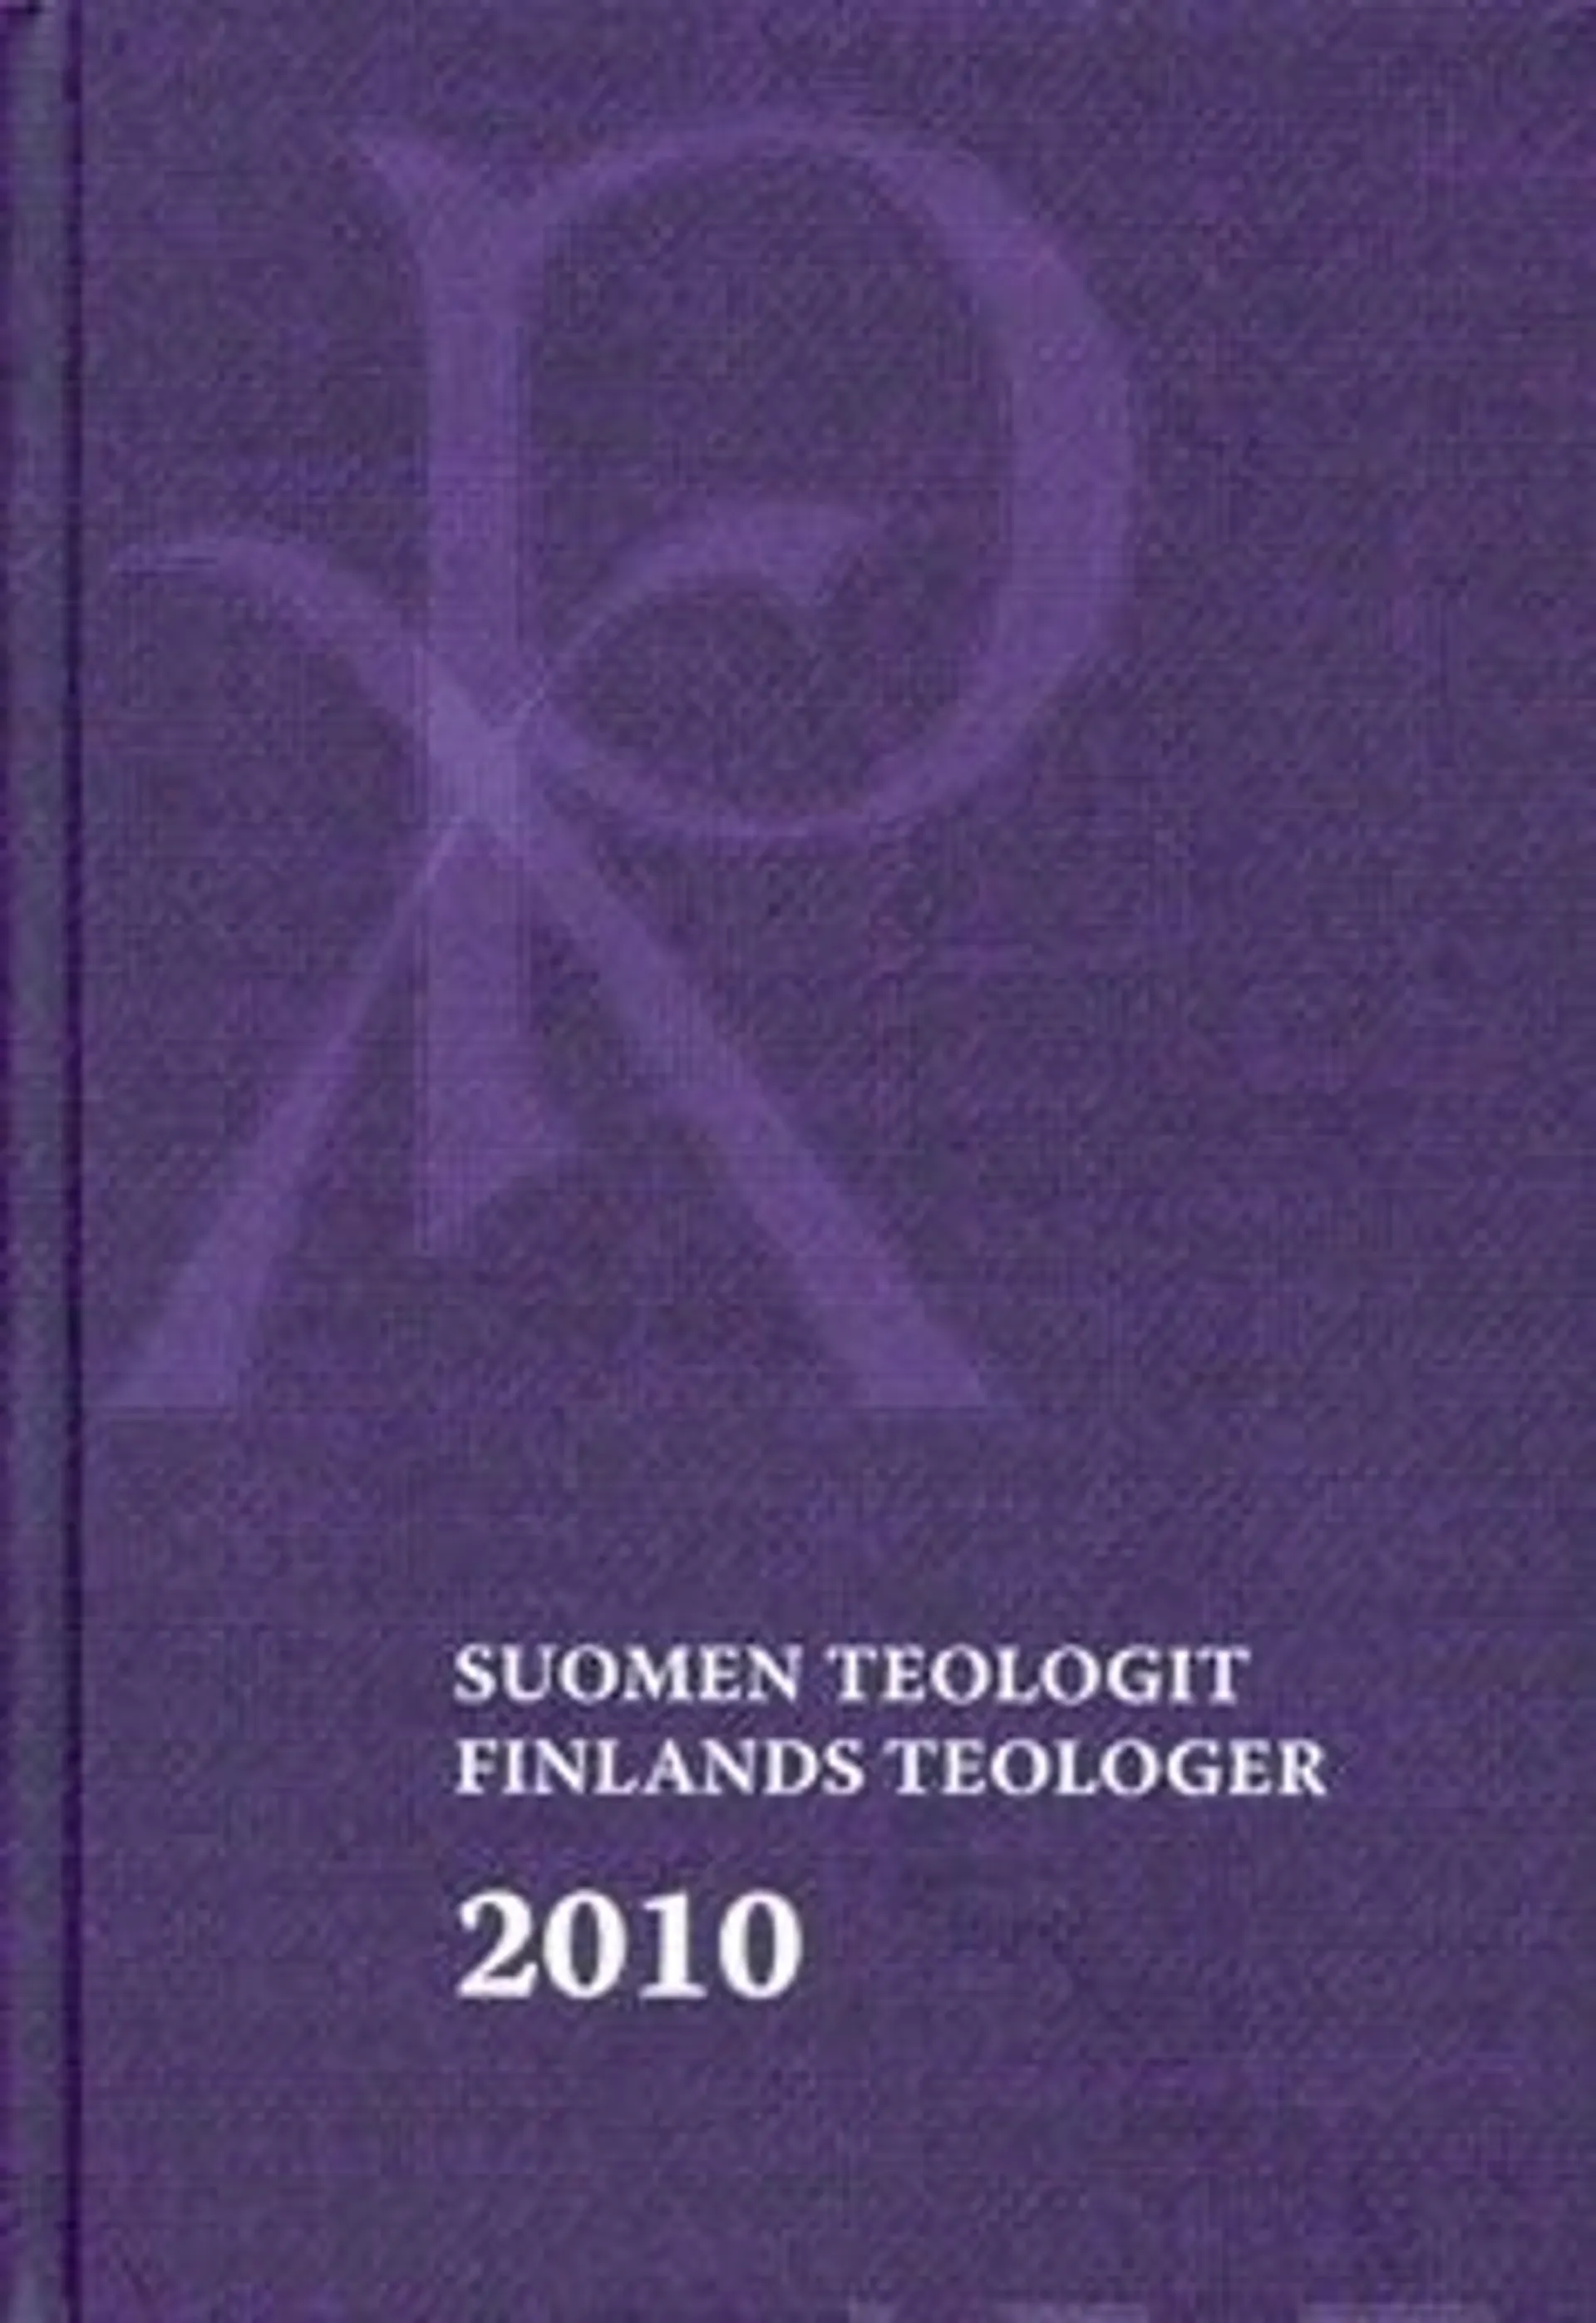 Suomen teologit 2010